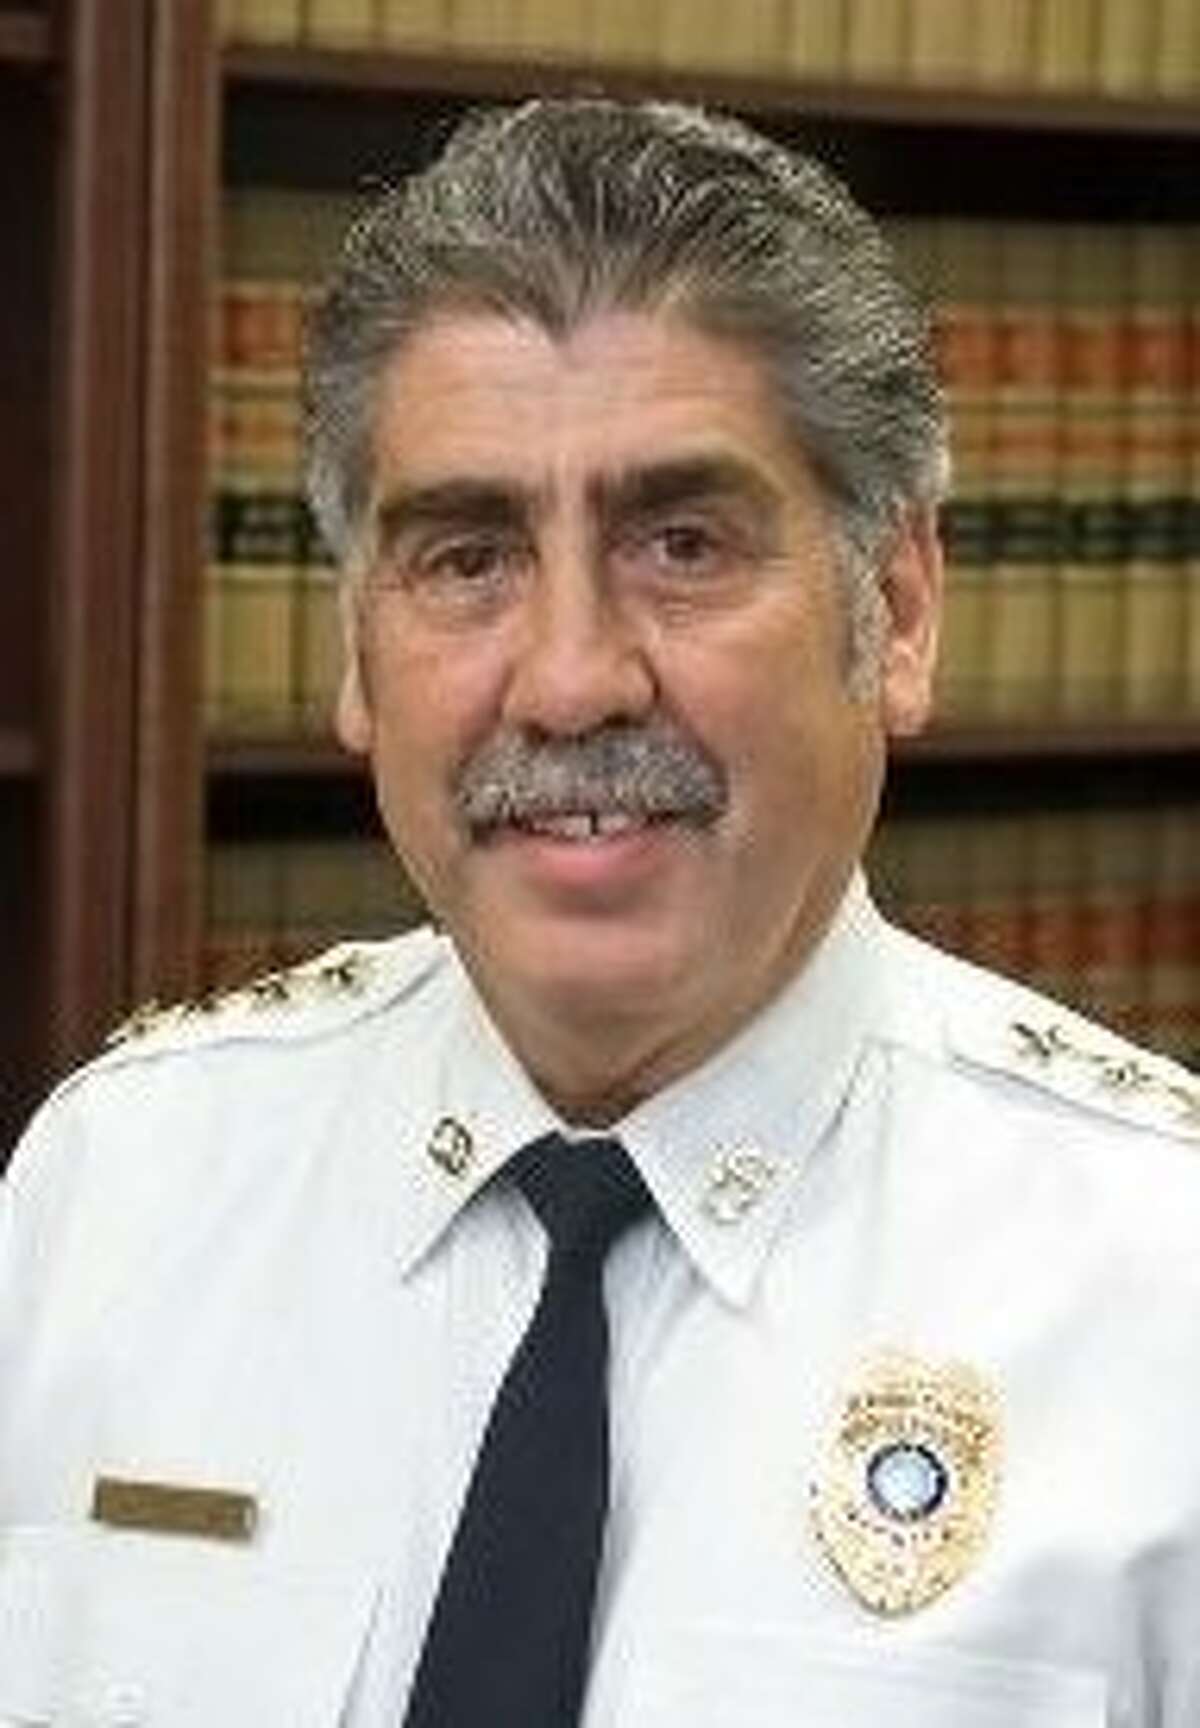 Harris County Precinct 6 Constable Victor Trevino